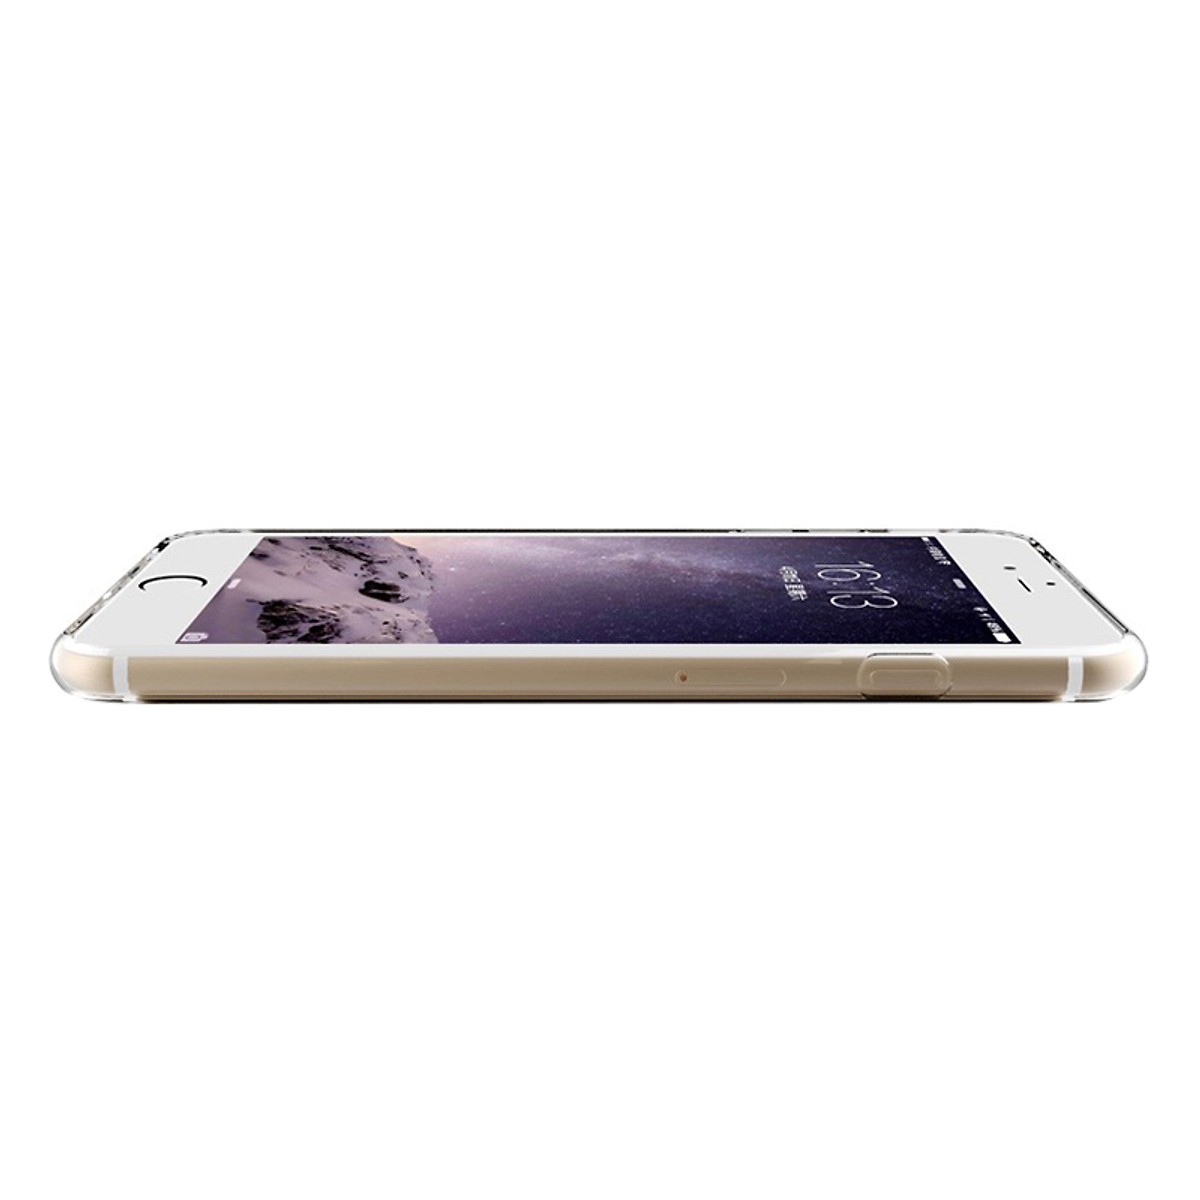 Hình ảnh Ốp lưng silicon dẻo cho iPhone 6 / iPhone 6s hiệu Ultra Thin siêu mỏng 0.6mm bảo vệ Camera - Hàng nhập khẩu